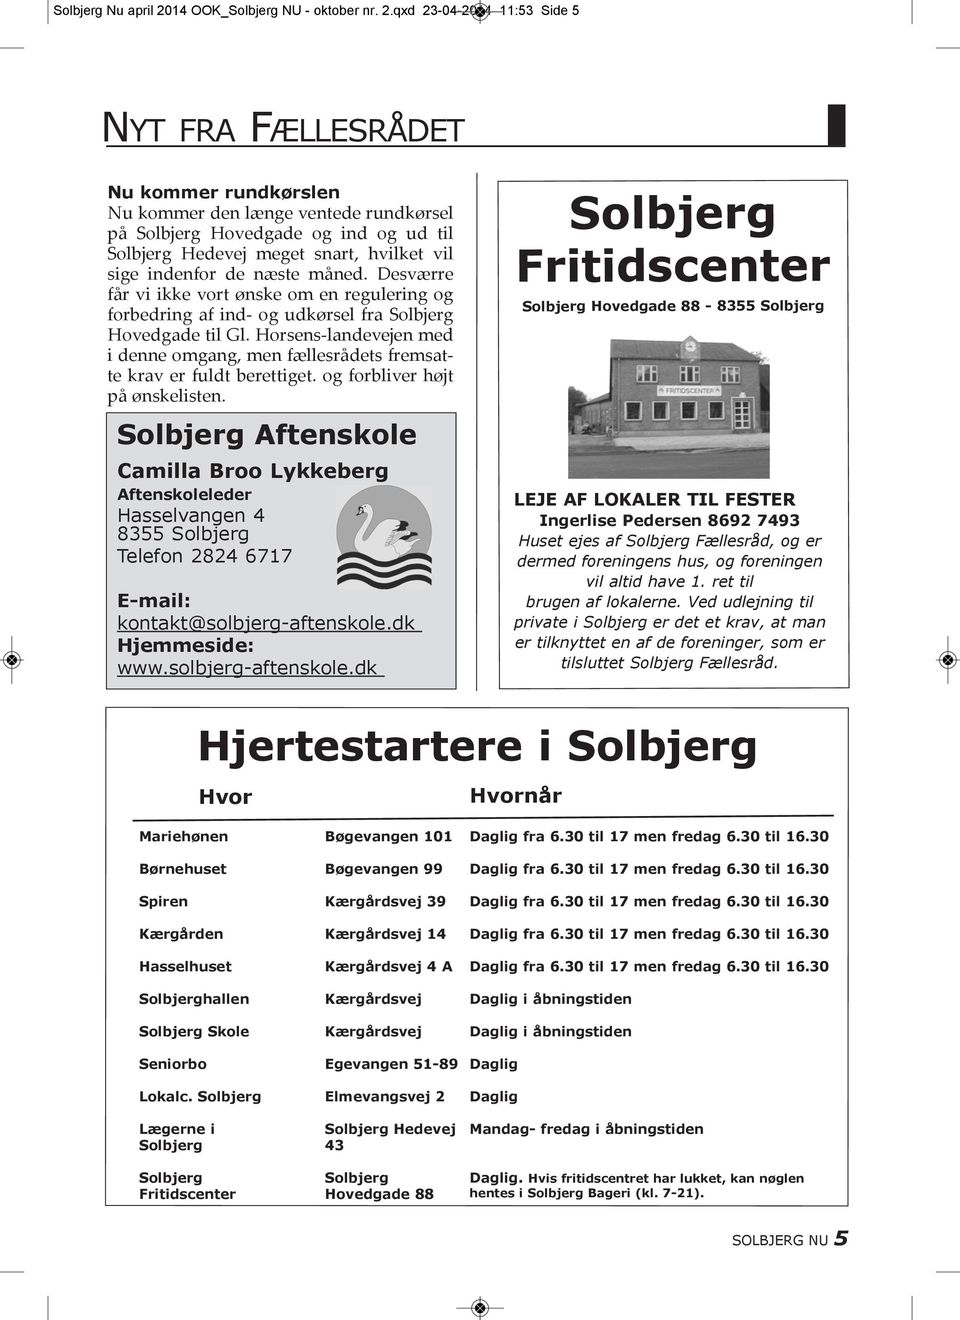 qxd 23-04-2014 11:53 Side 5 Nyt fra fællesrådet Nu kommer rundkørslen Nu kommer den længe ventede rundkørsel på Solbjerg Hovedgade og ind og ud til Solbjerg Hedevej meget snart, hvilket vil sige